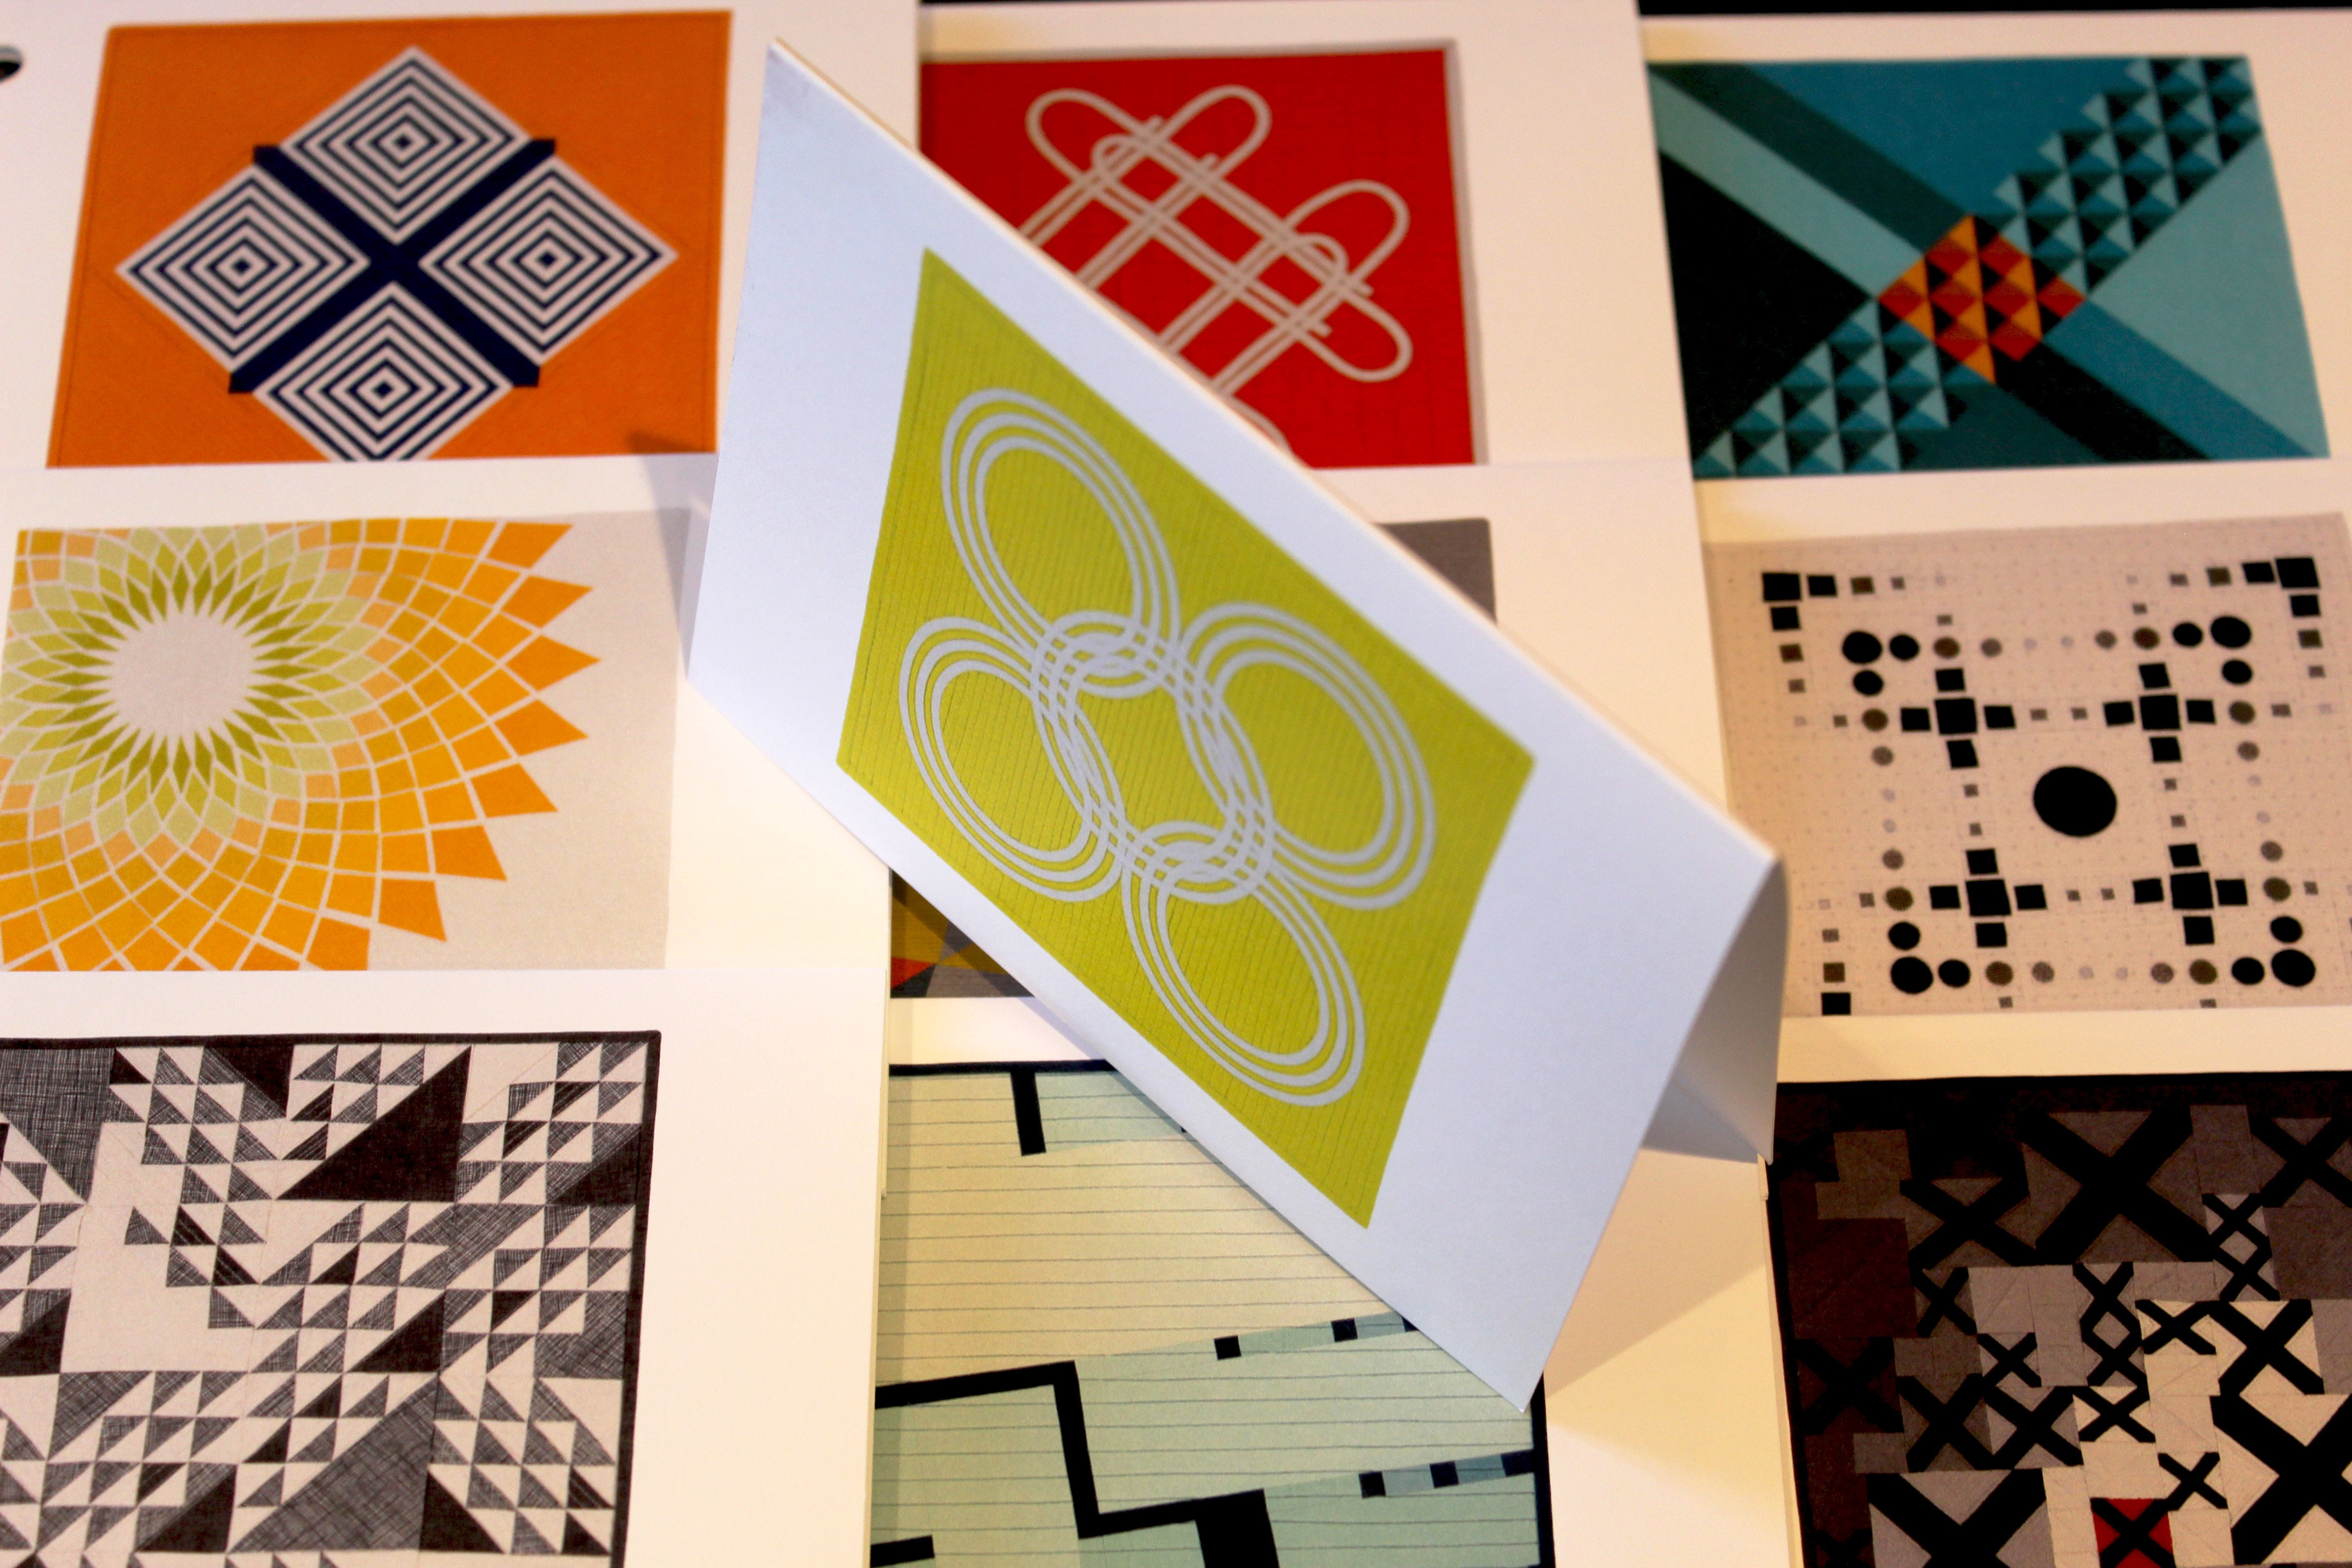 Notecard Set  of Modern Meets Modern Challenge Quilts